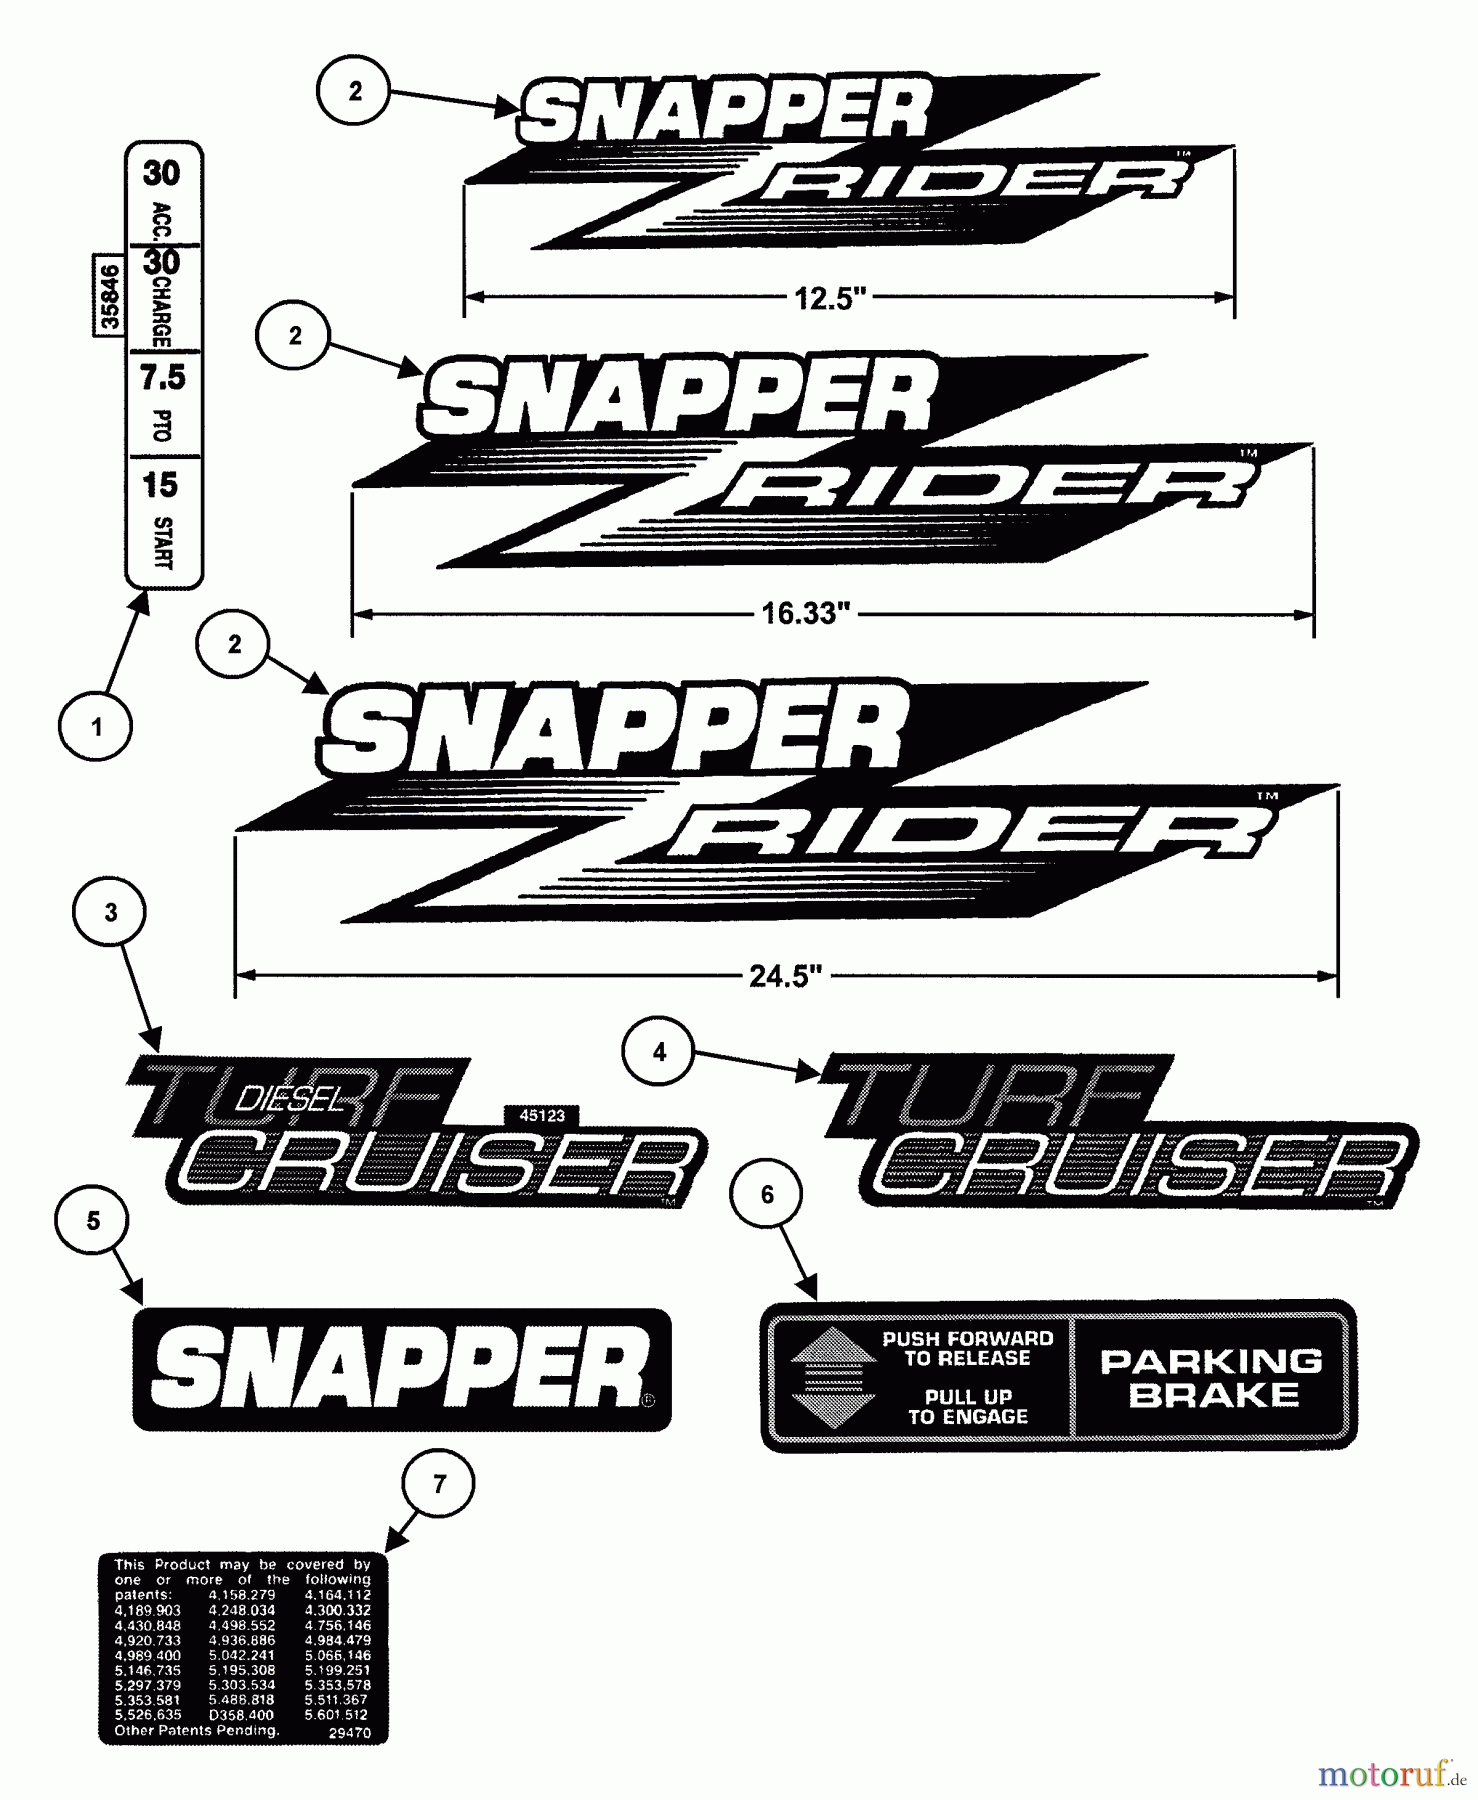  Snapper Mähdecks EZF5200M - Snapper 52